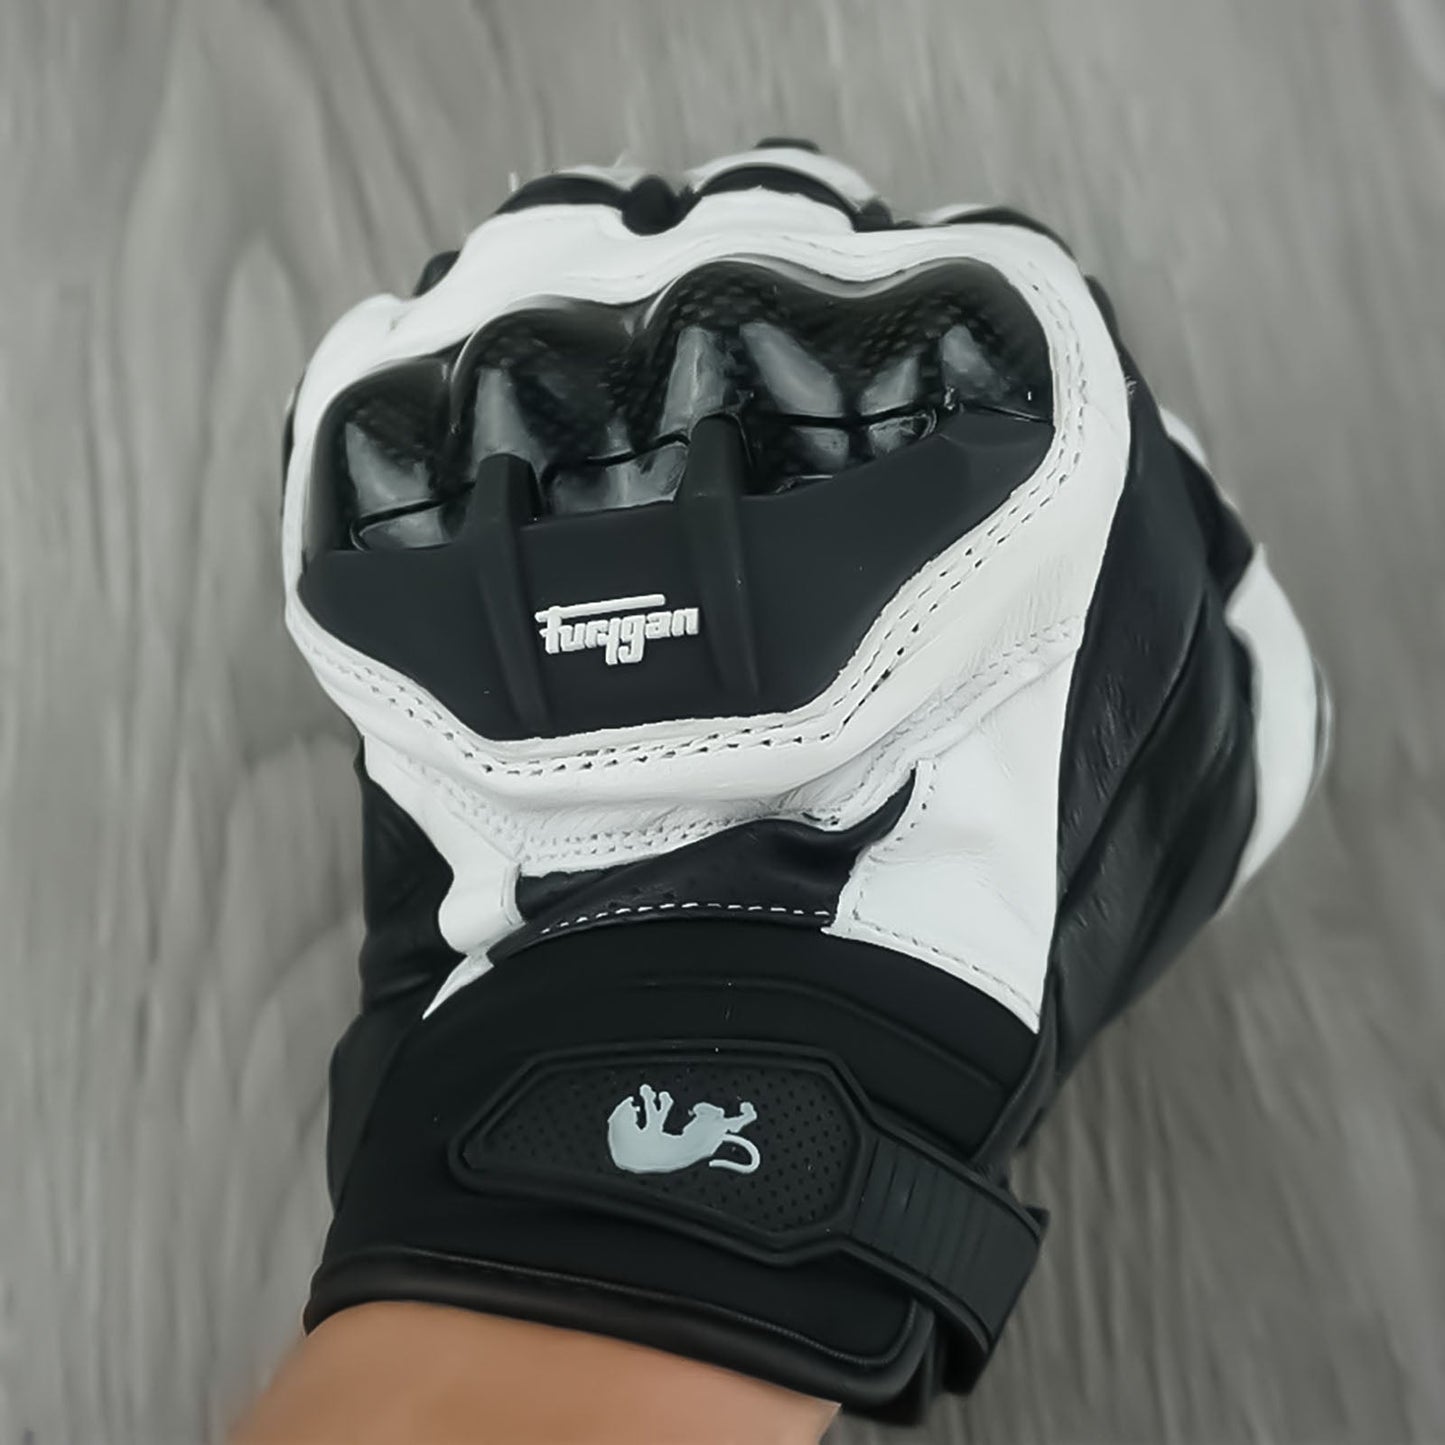 SpeedGrip Gloves